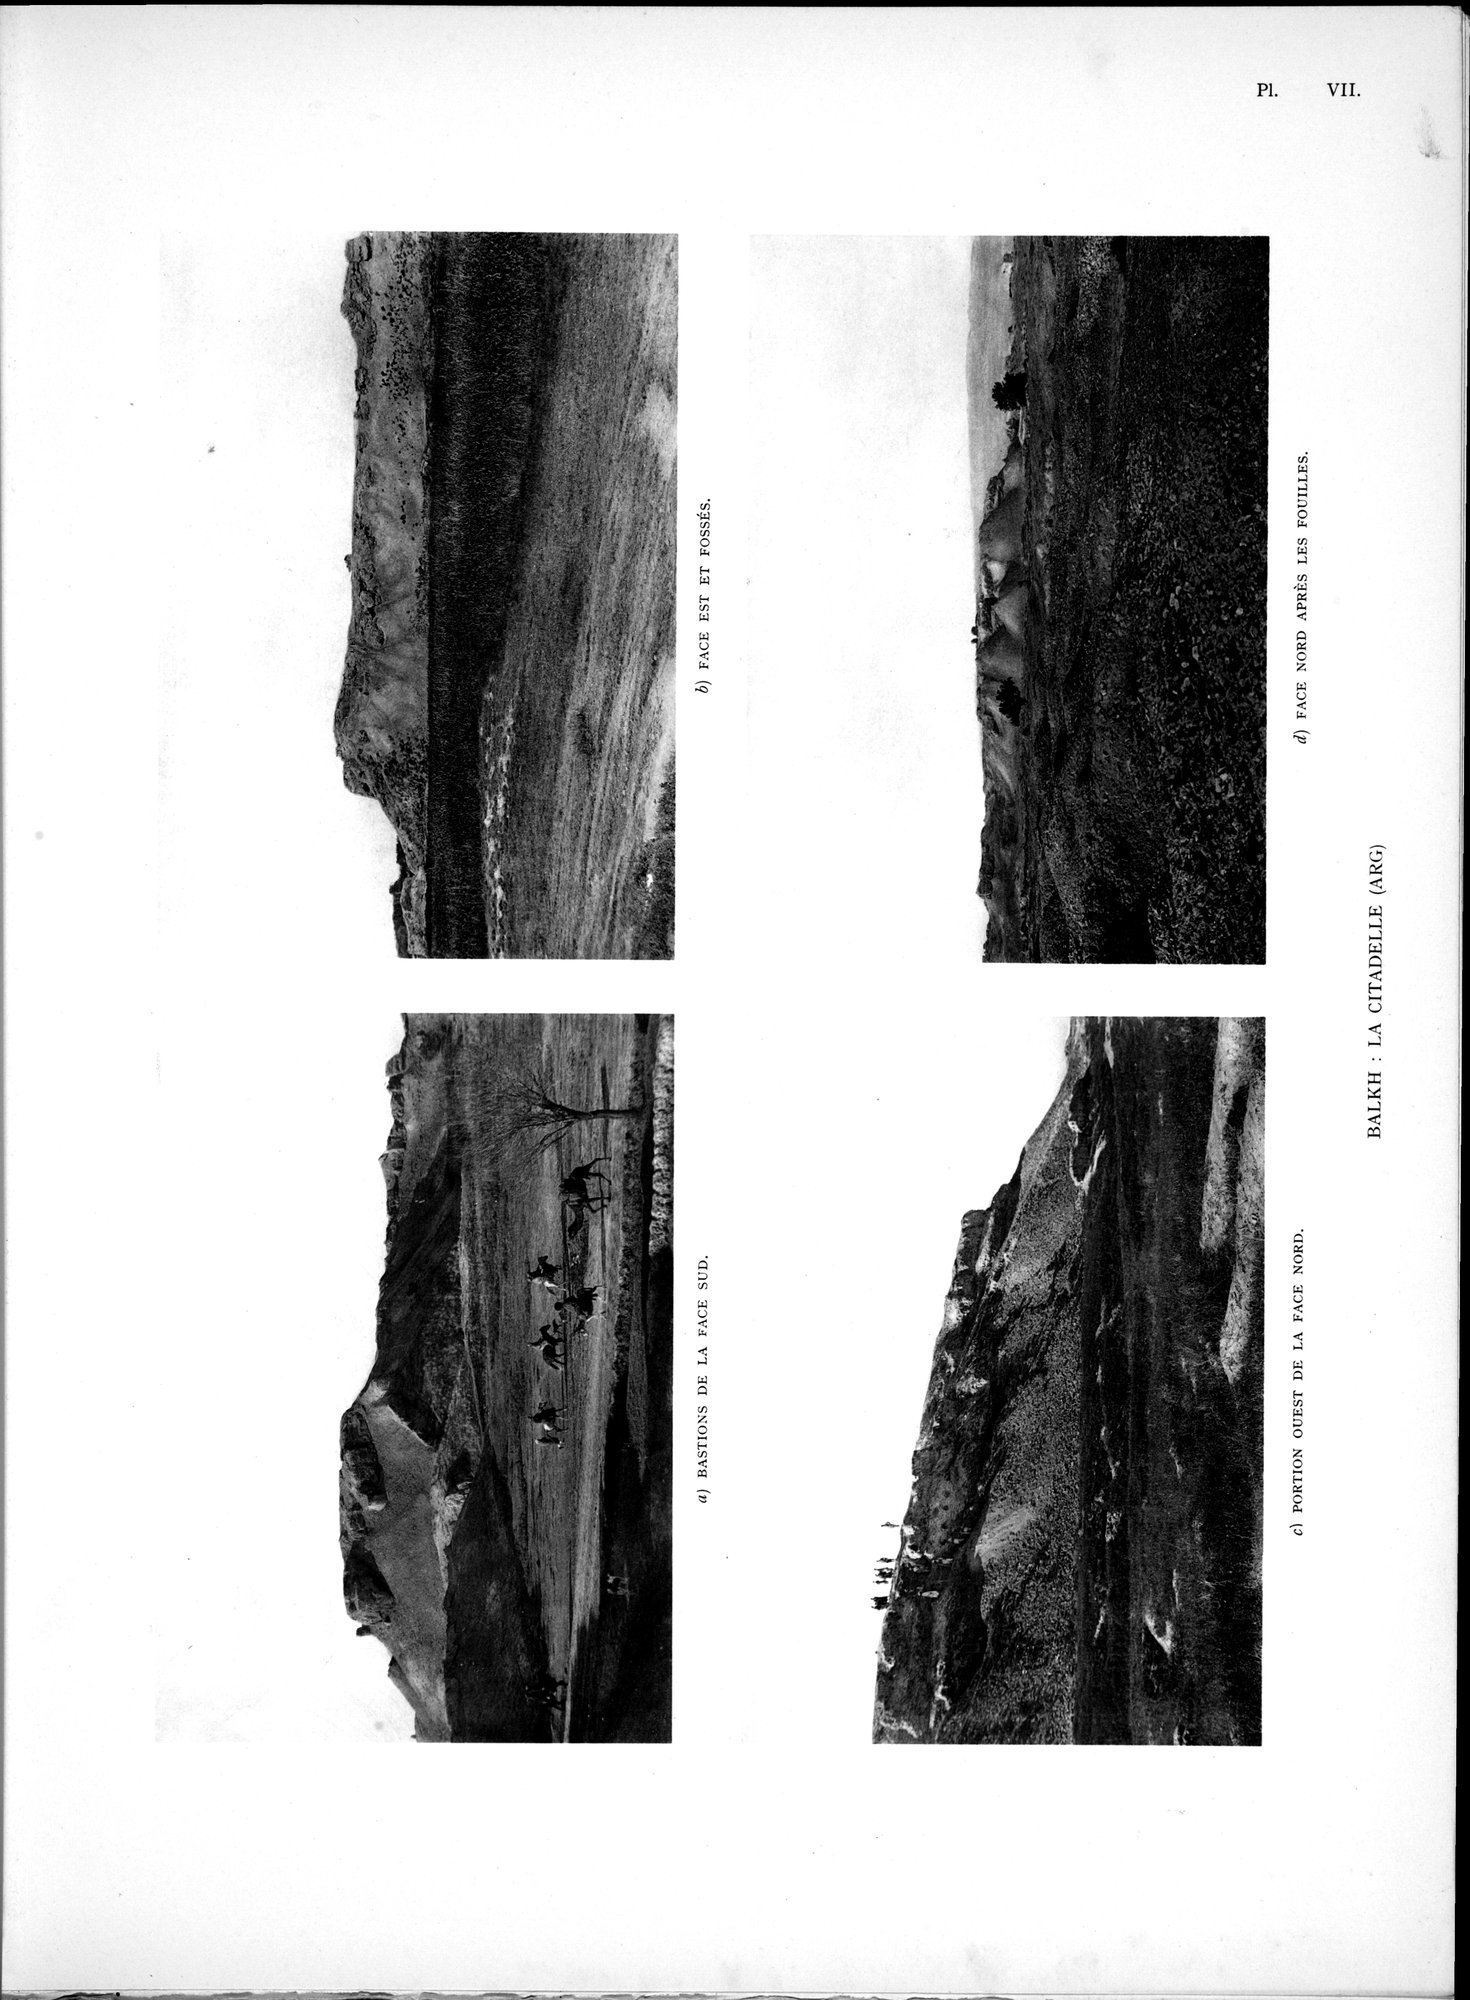 La Vieille Route de l'Inde de Bactres à Taxila : vol.1 / Page 199 (Grayscale High Resolution Image)